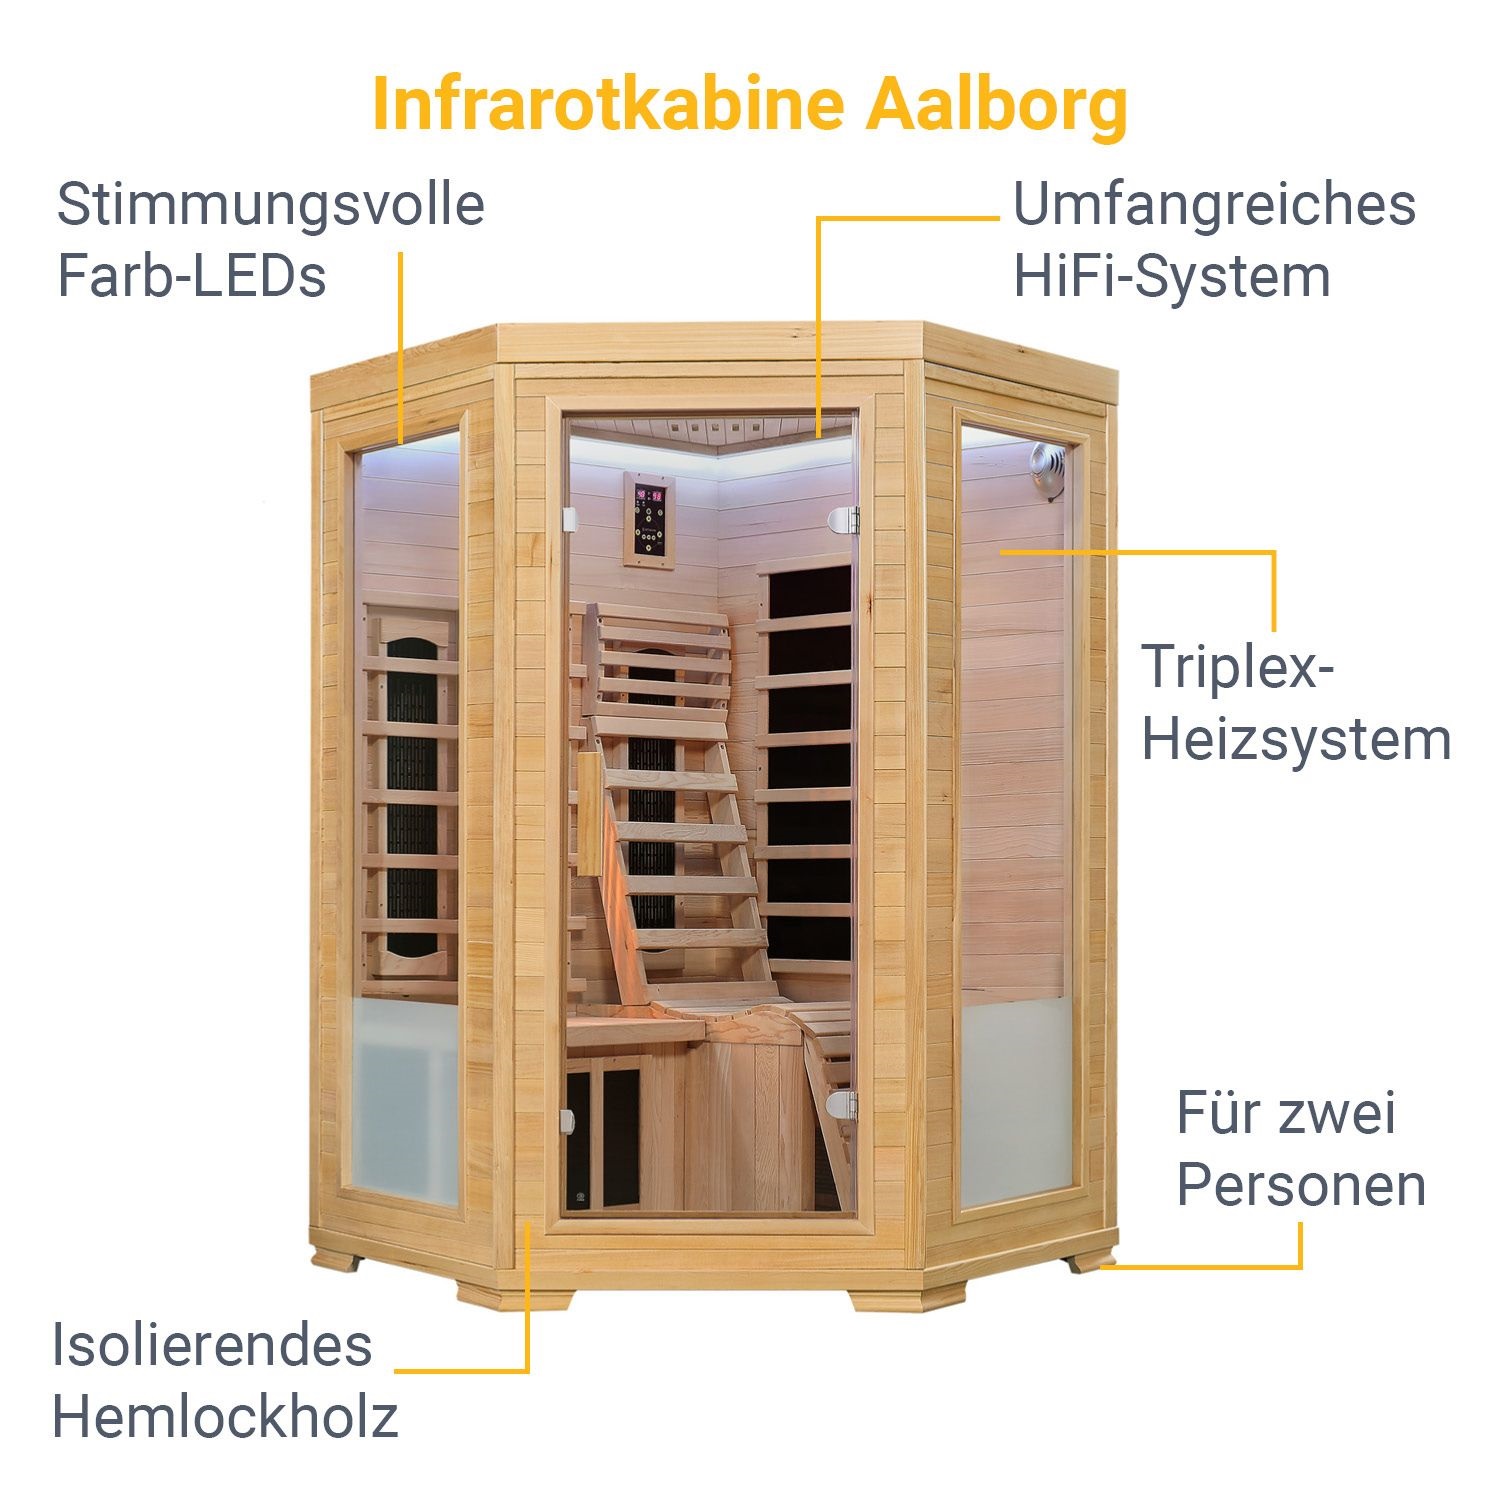 Infrarotkabine Aalborg mit Triplex-Heizsystem und Hemlockholz